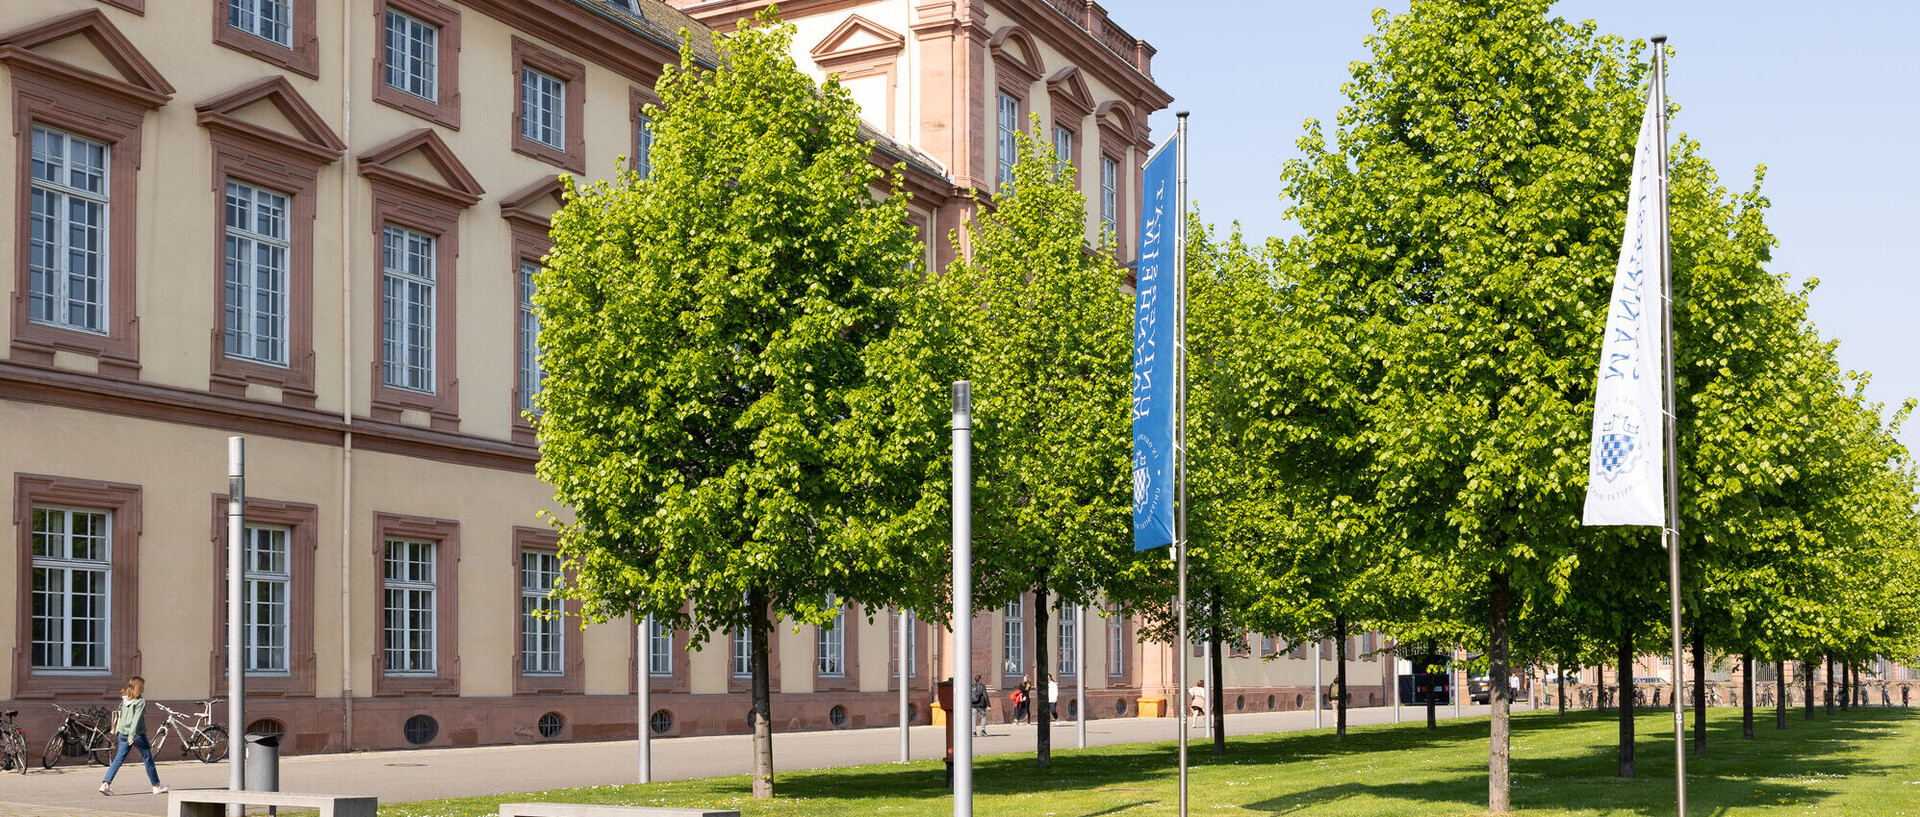 Blick auf den Ostflügel der Universität Mannheim mit grünen Bäumen im Vordergrund und der sandsteinfarbenen Schlossfassade im Hintergrund. Ganz vorne blaue Banner mit dem Universitätssiegel und dem Schriftzug UNIVERSITÄT MANNHEIM.